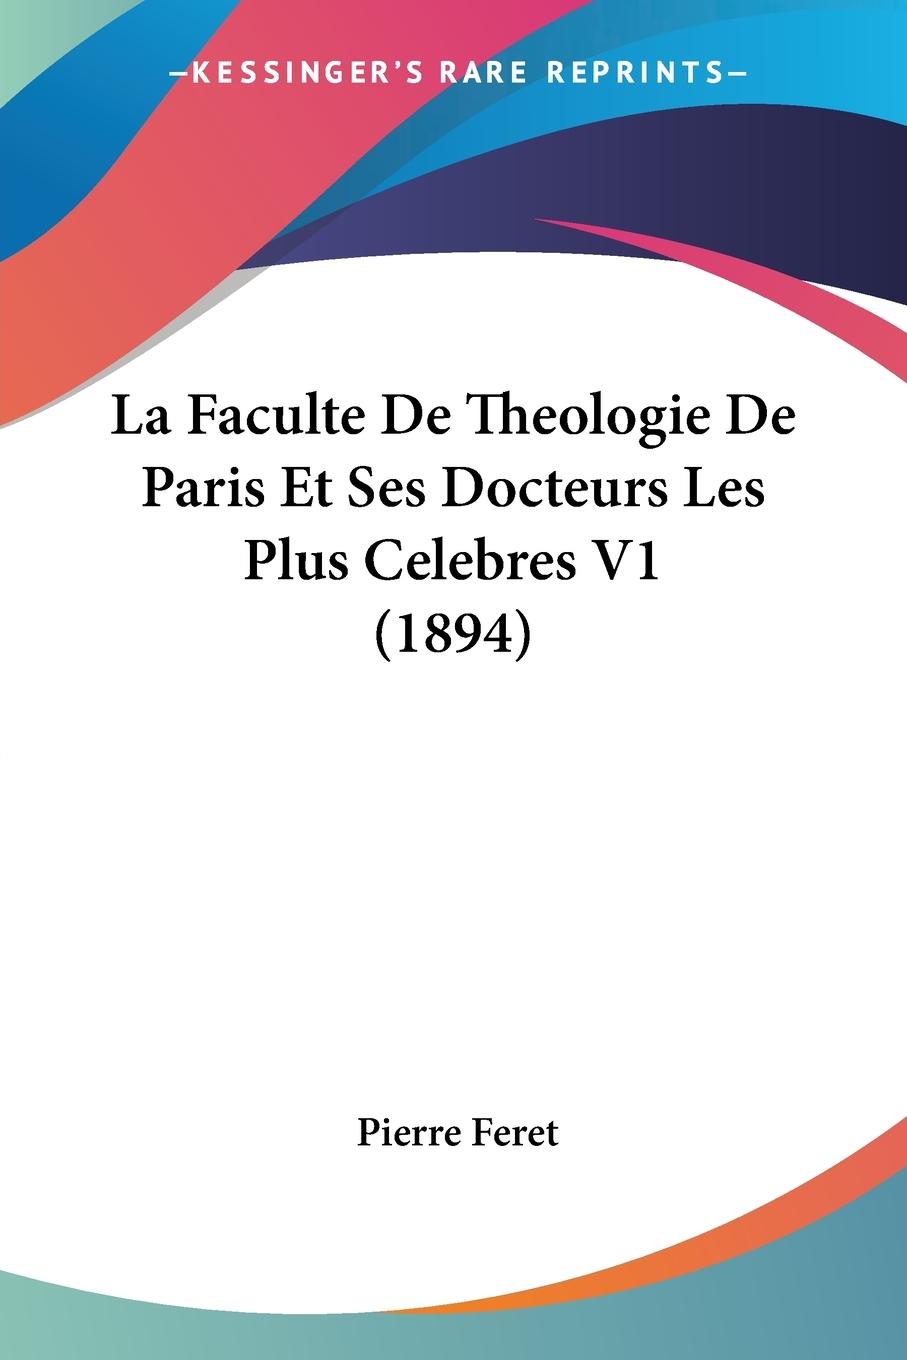 La Faculte De Theologie De Paris Et Ses Docteurs Les Plus Celebres V1 (1894) - Feret, Pierre